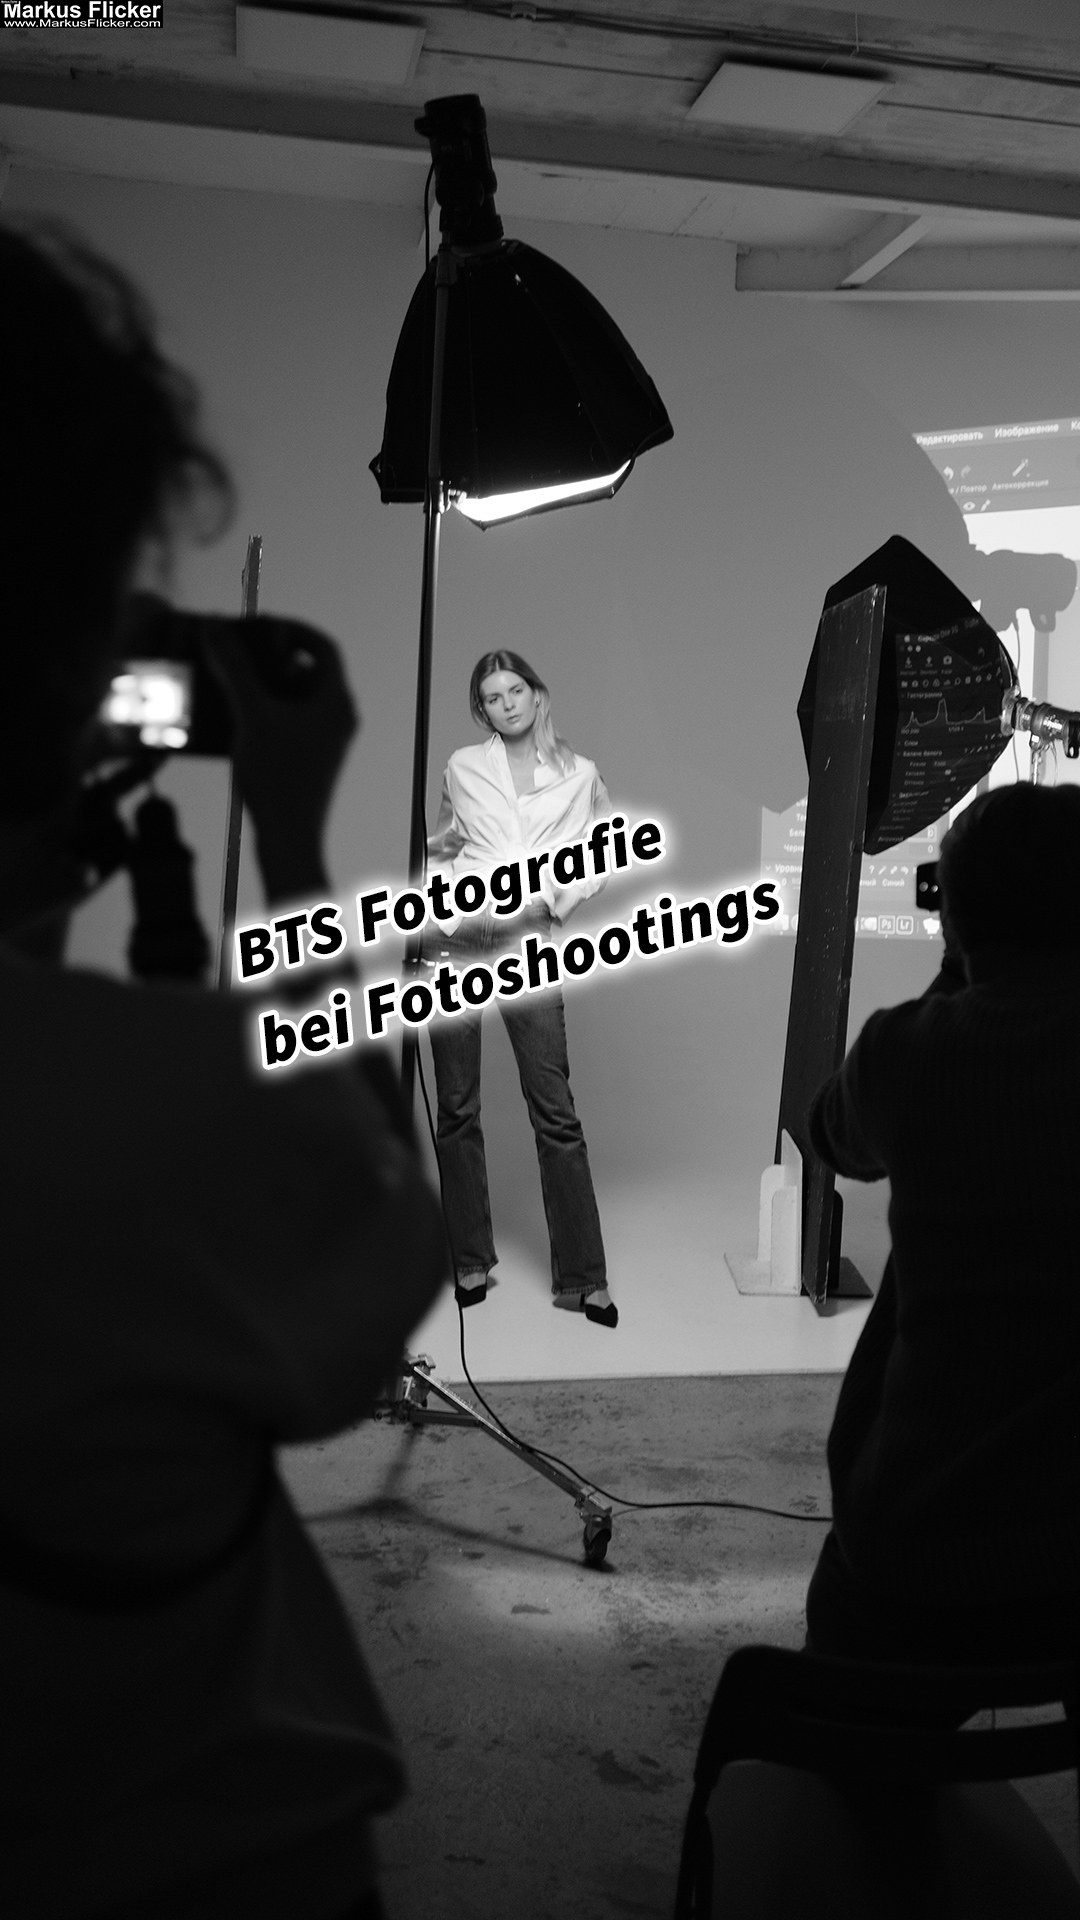 Behind the scenes Fotografie bei Fotoshootings BTS